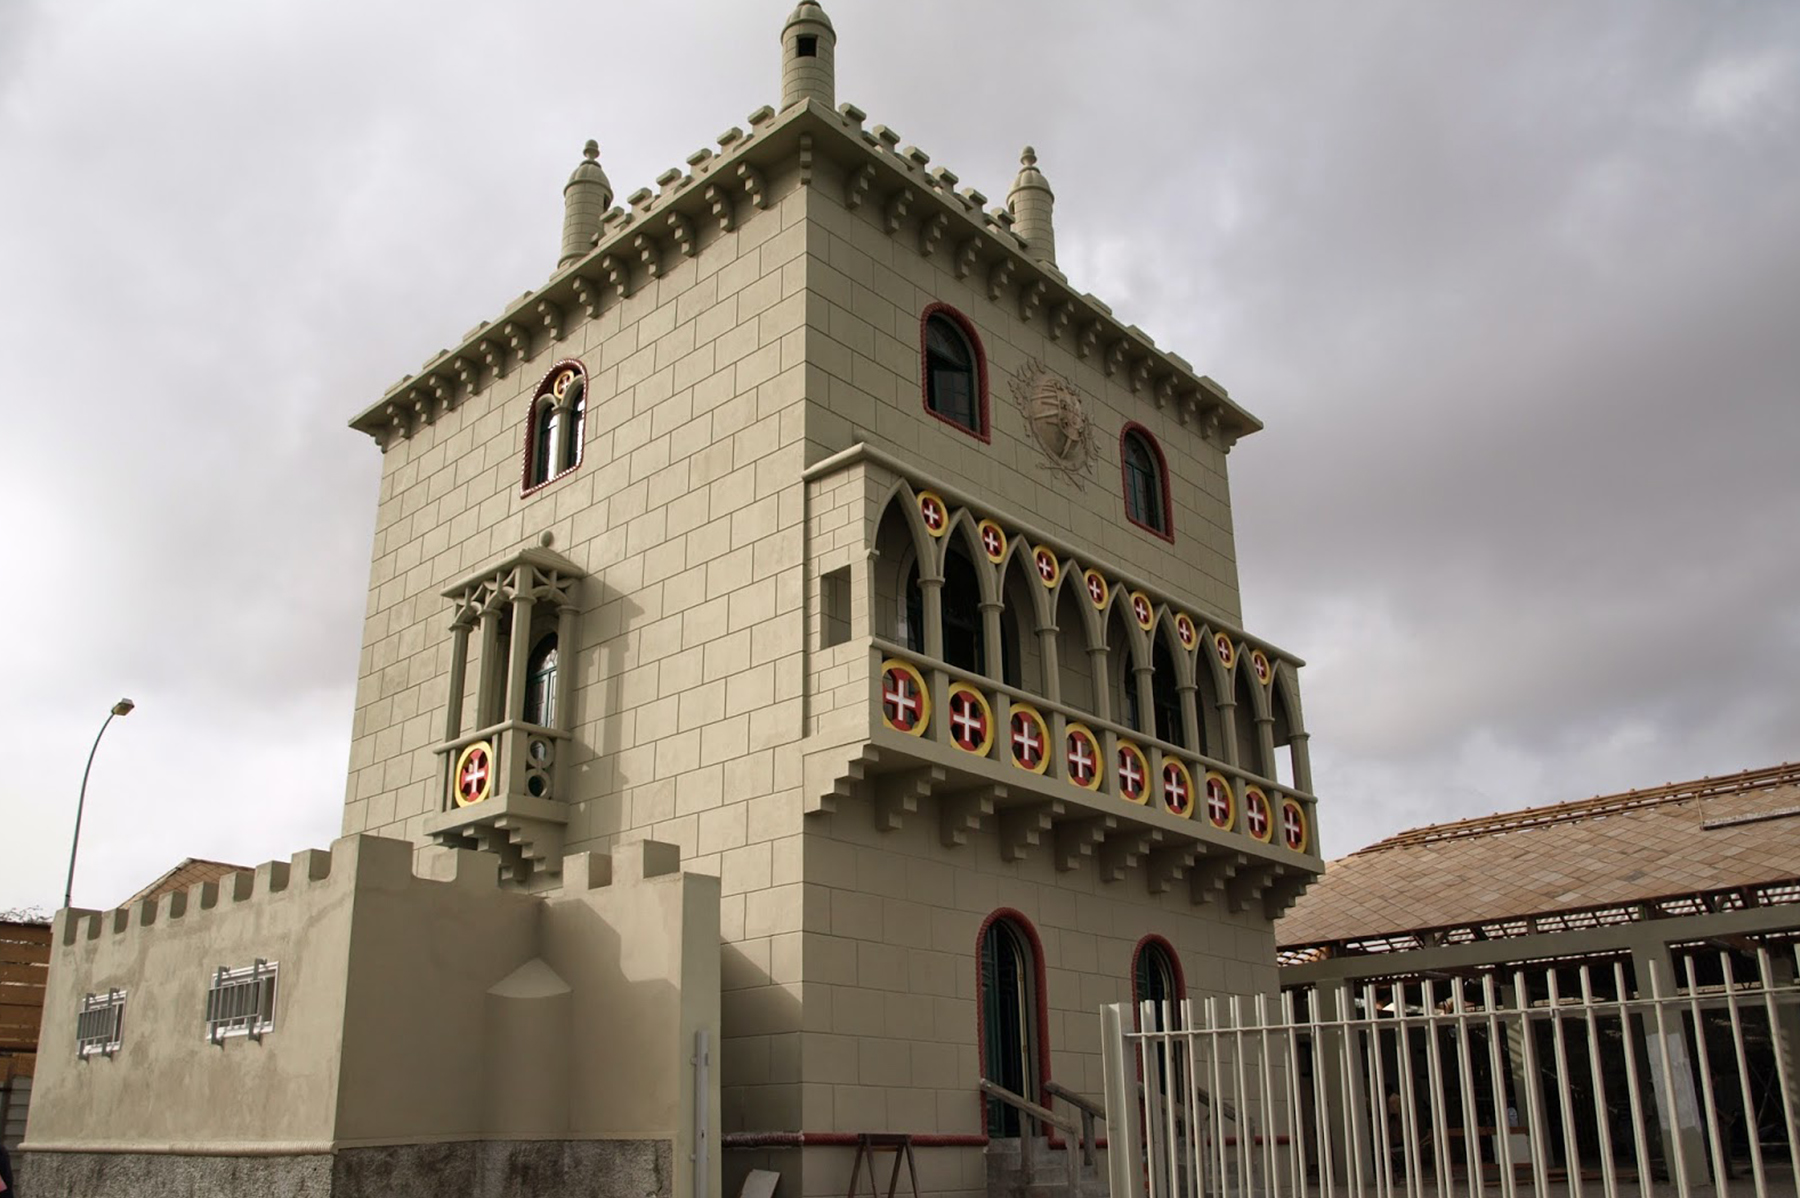 image-Torre de Belém